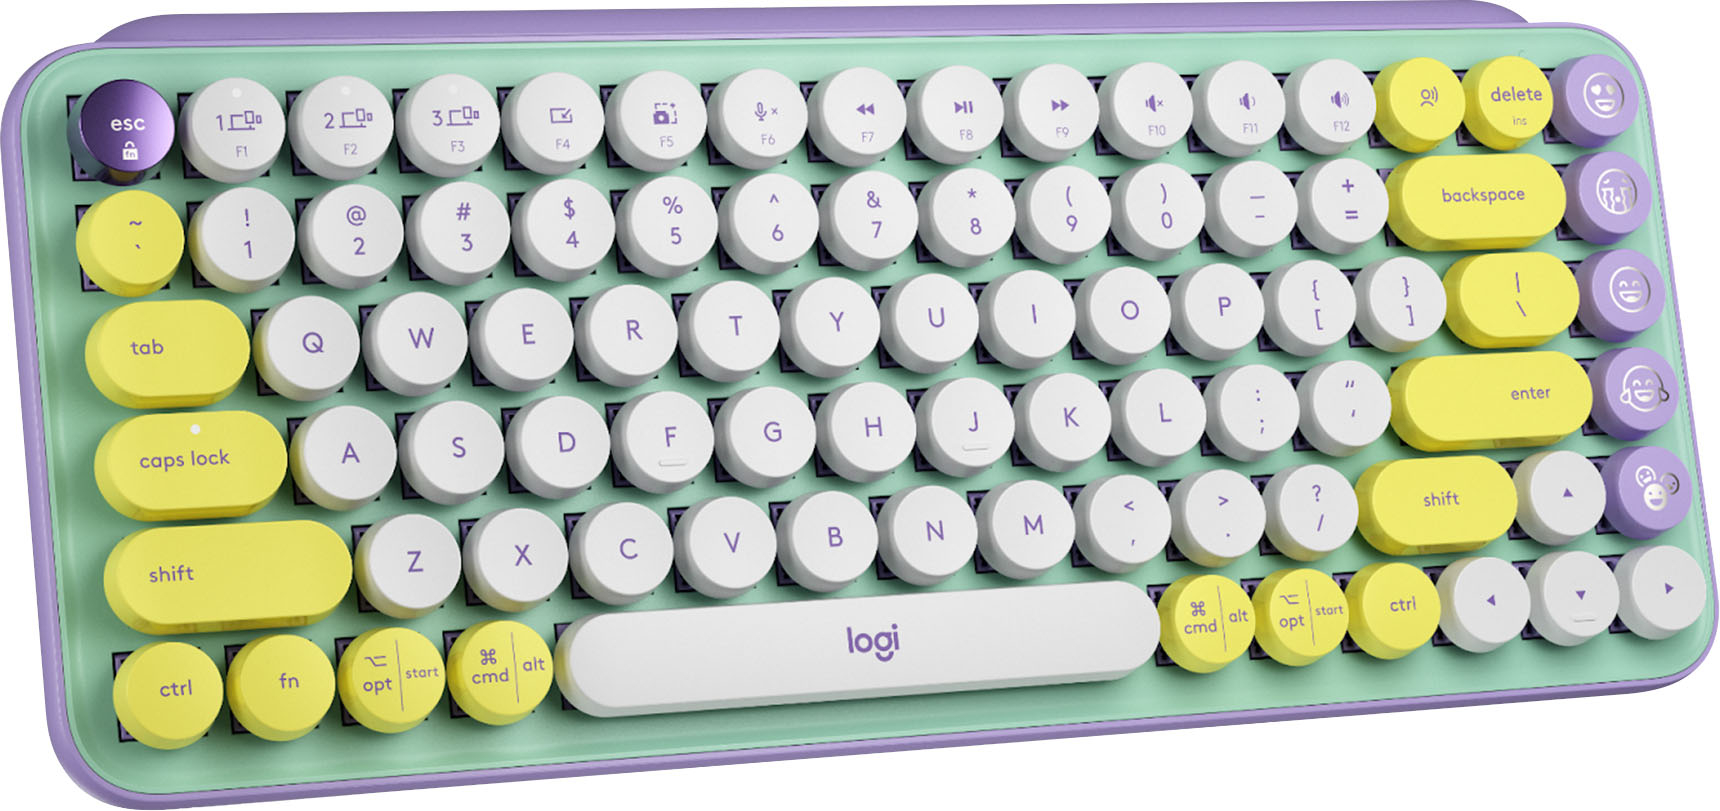 Logitech Pop Keys Wireless Mechanical Keyboard